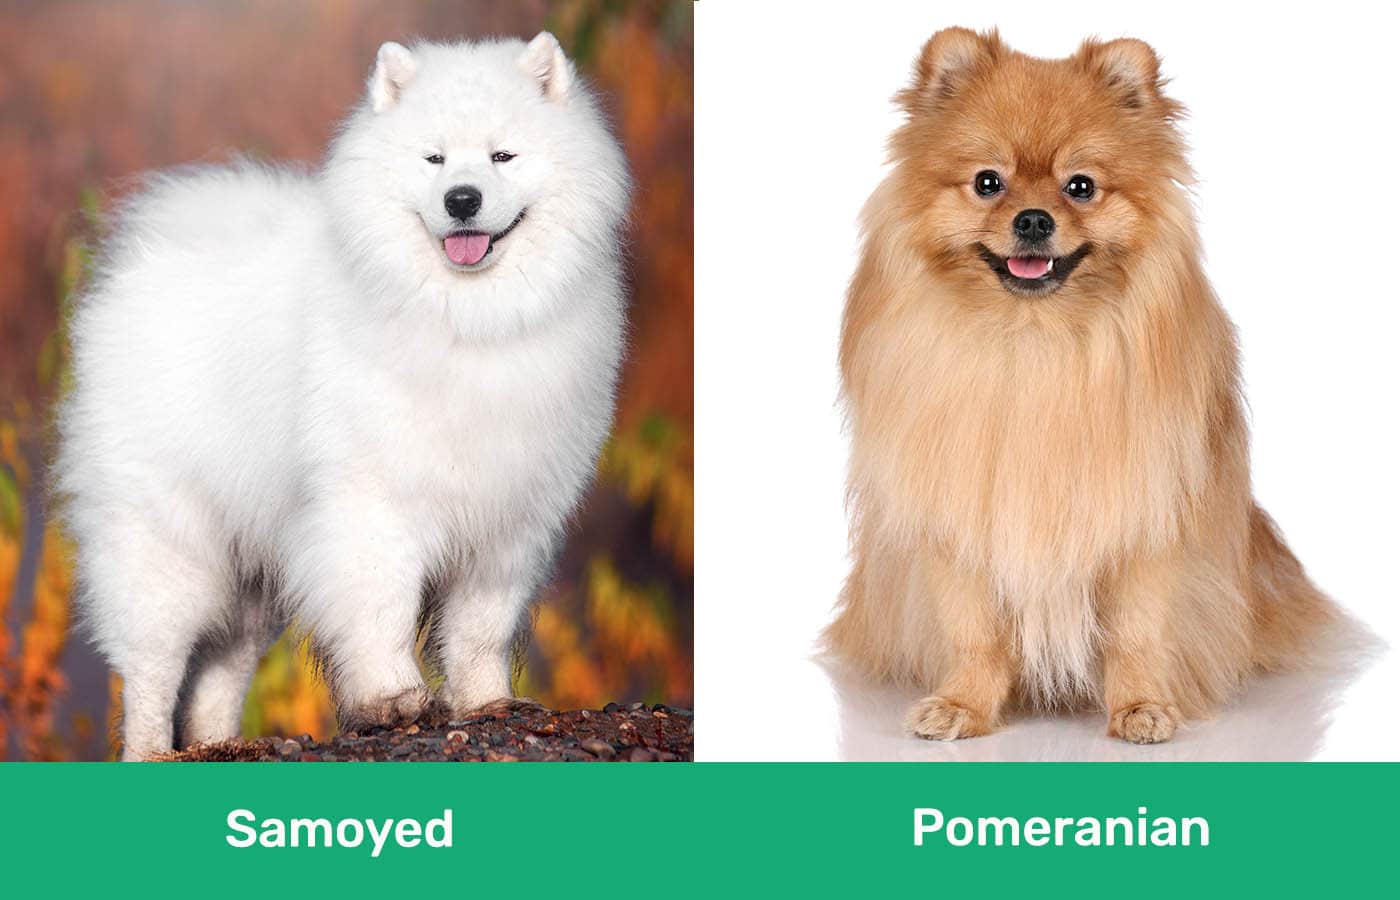 Samoyed vs Pomeranian side by side